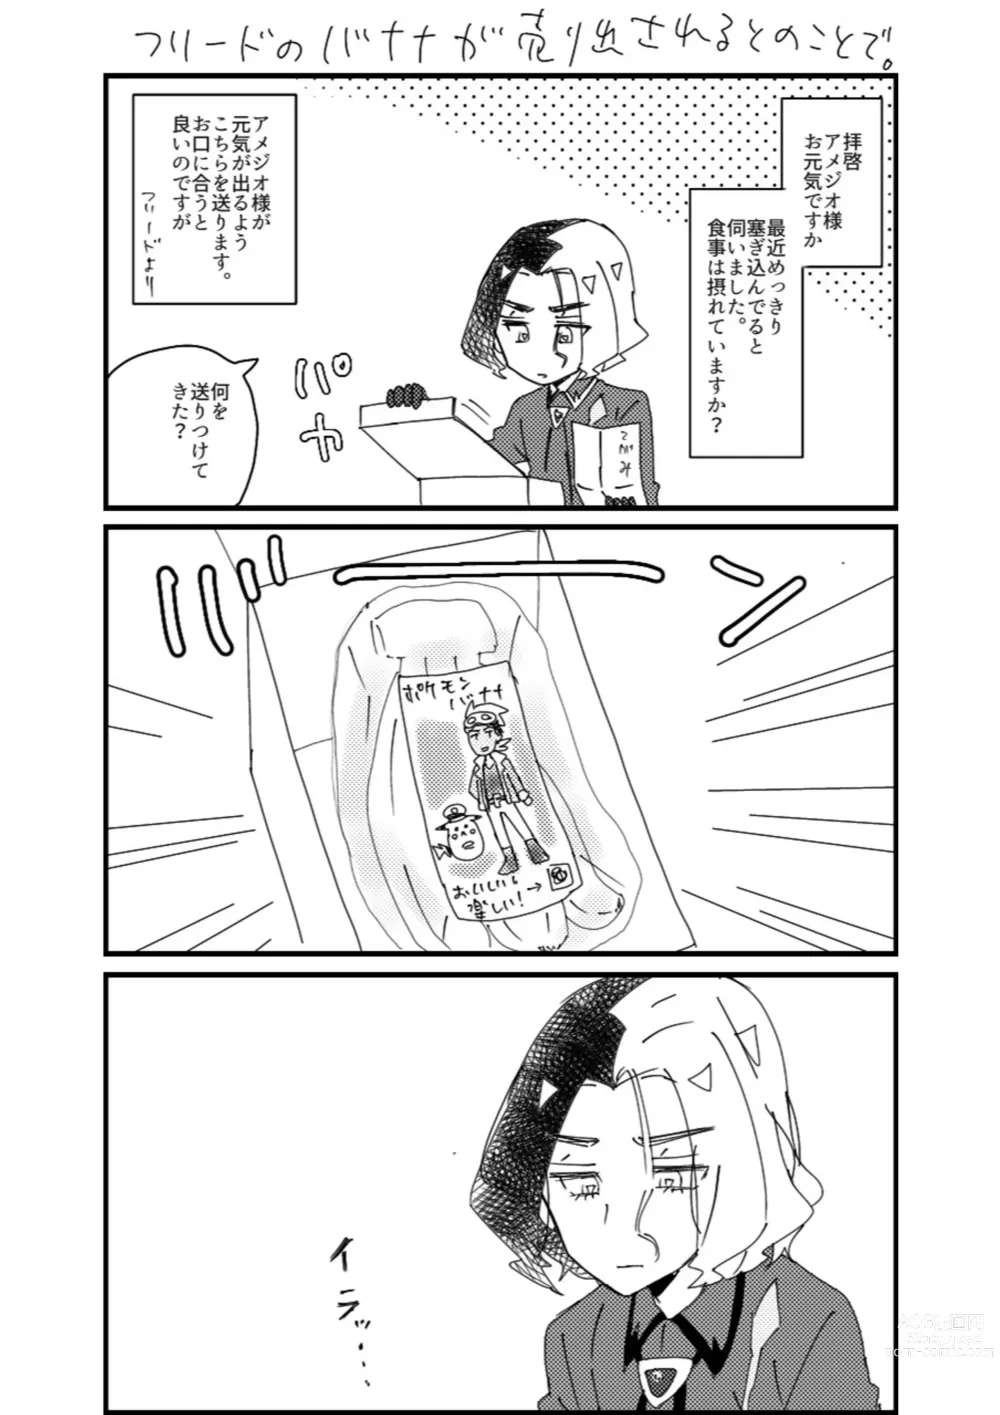 Page 62 of doujinshi Furiame Hanashi 2